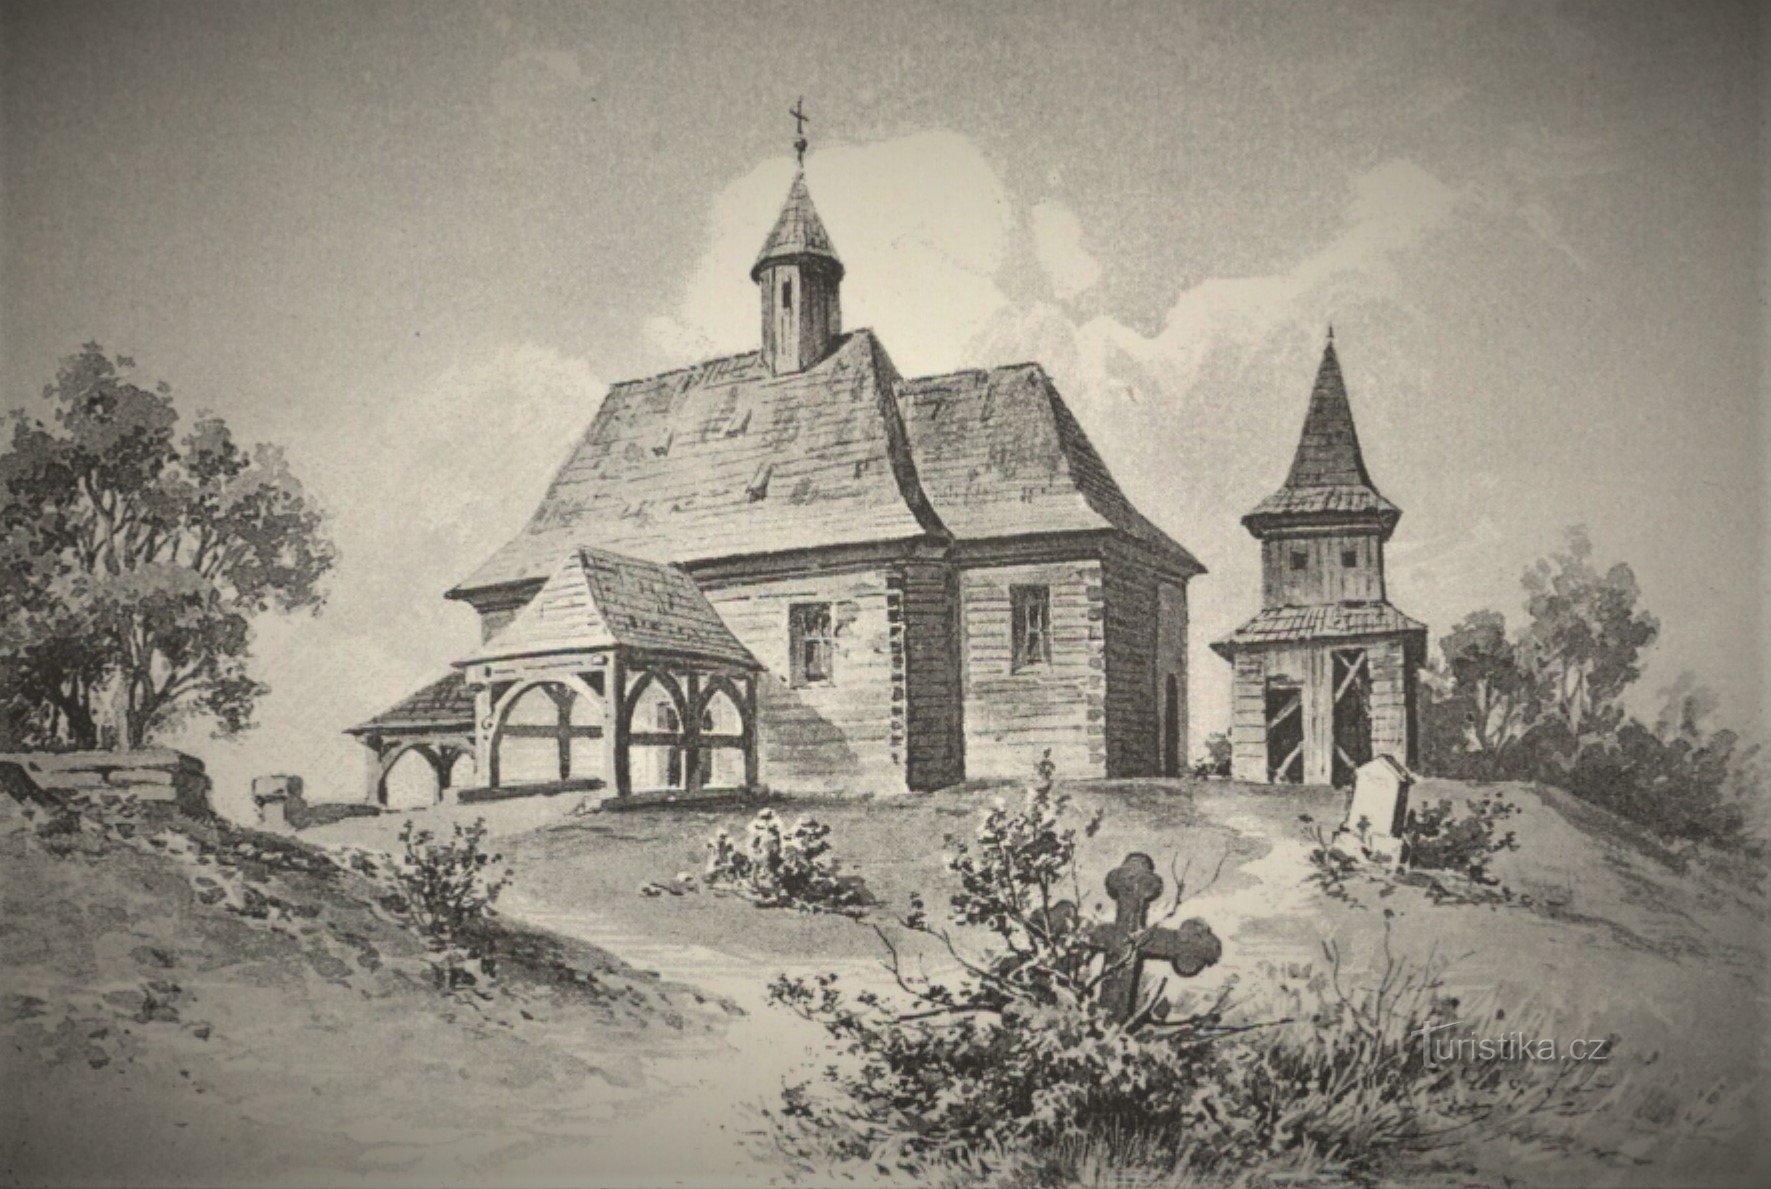 Aparição da igreja original em Orebe (Třebechovice pod Orebem, 1ª metade do século XIX)